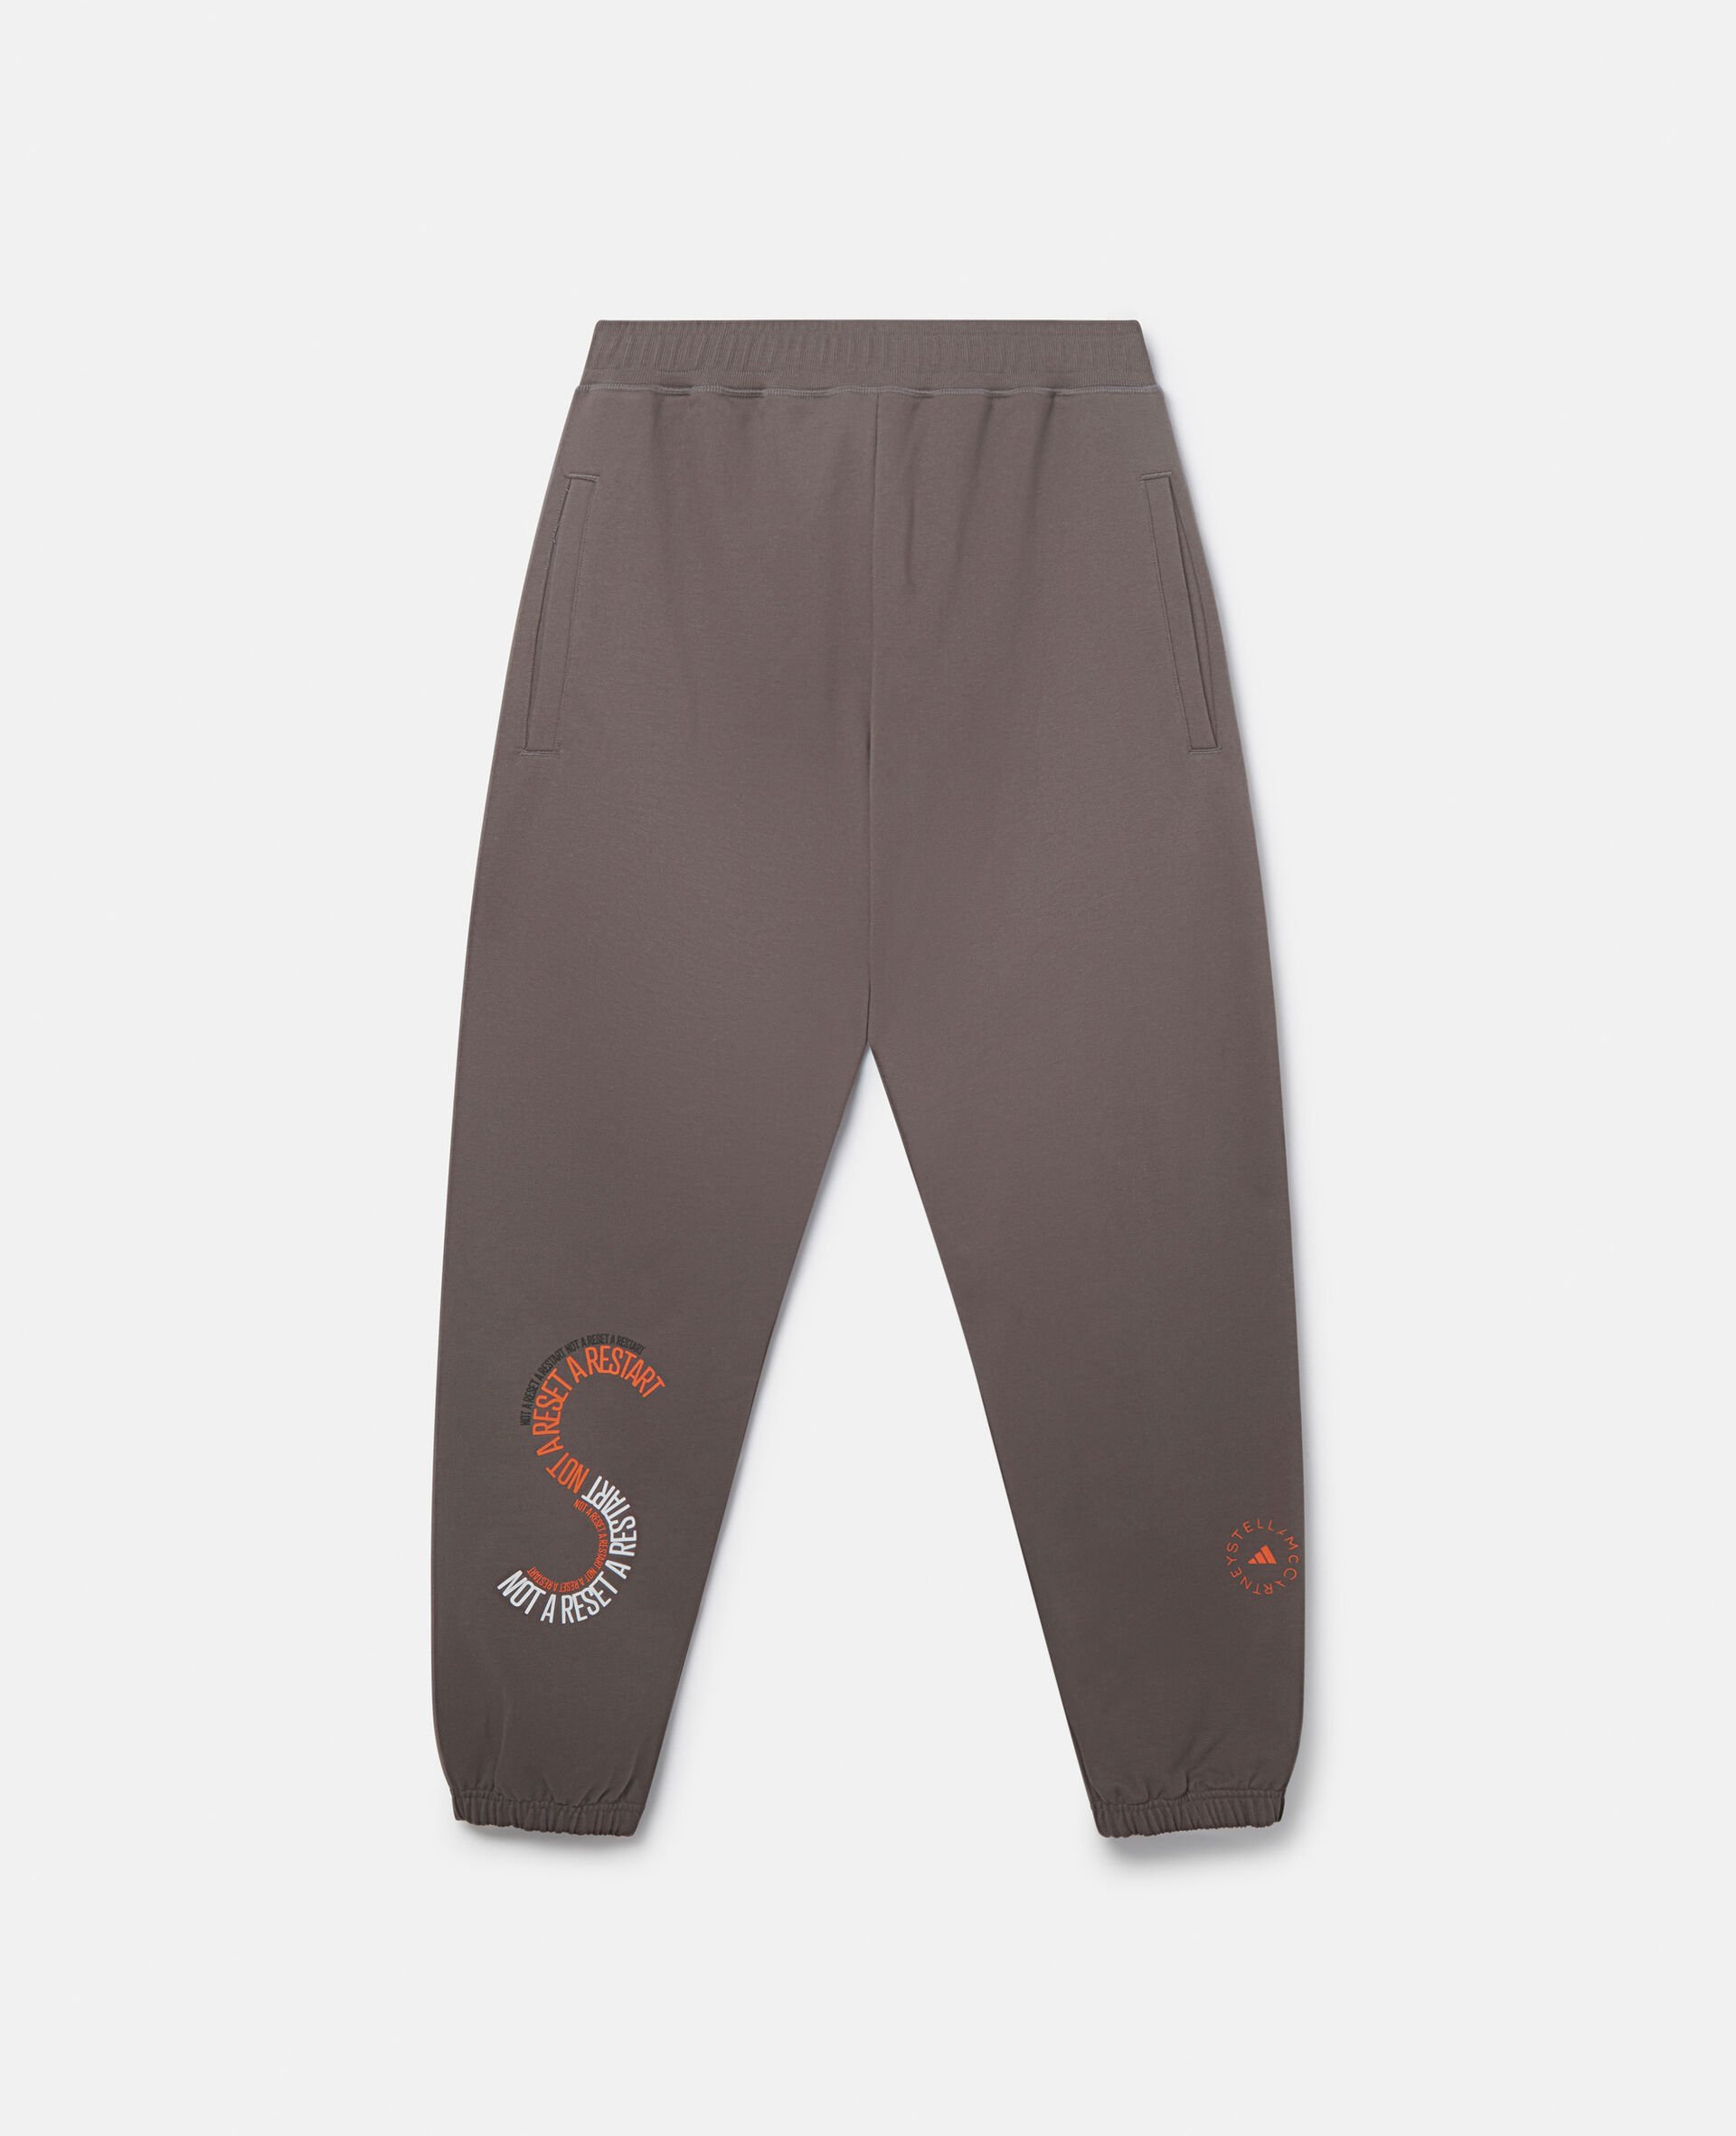 Unisex Sportswear Joggers-Grey-large image number 0